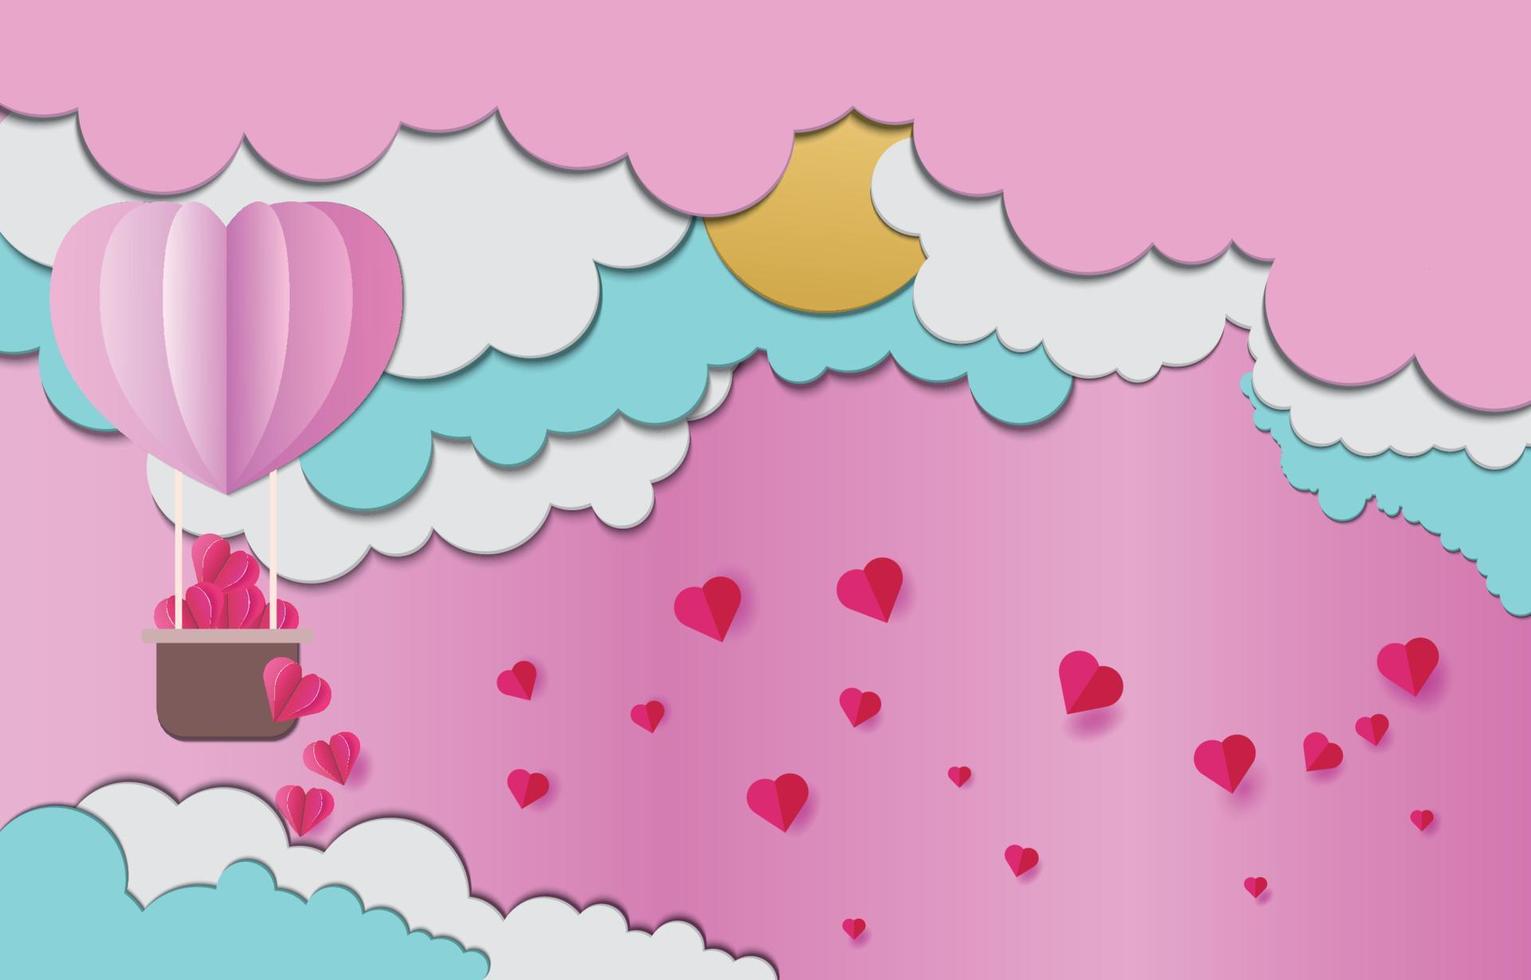 globo aerostático en el cielo cayendo corazón rosa en las nubes diseño de arte en papel vector